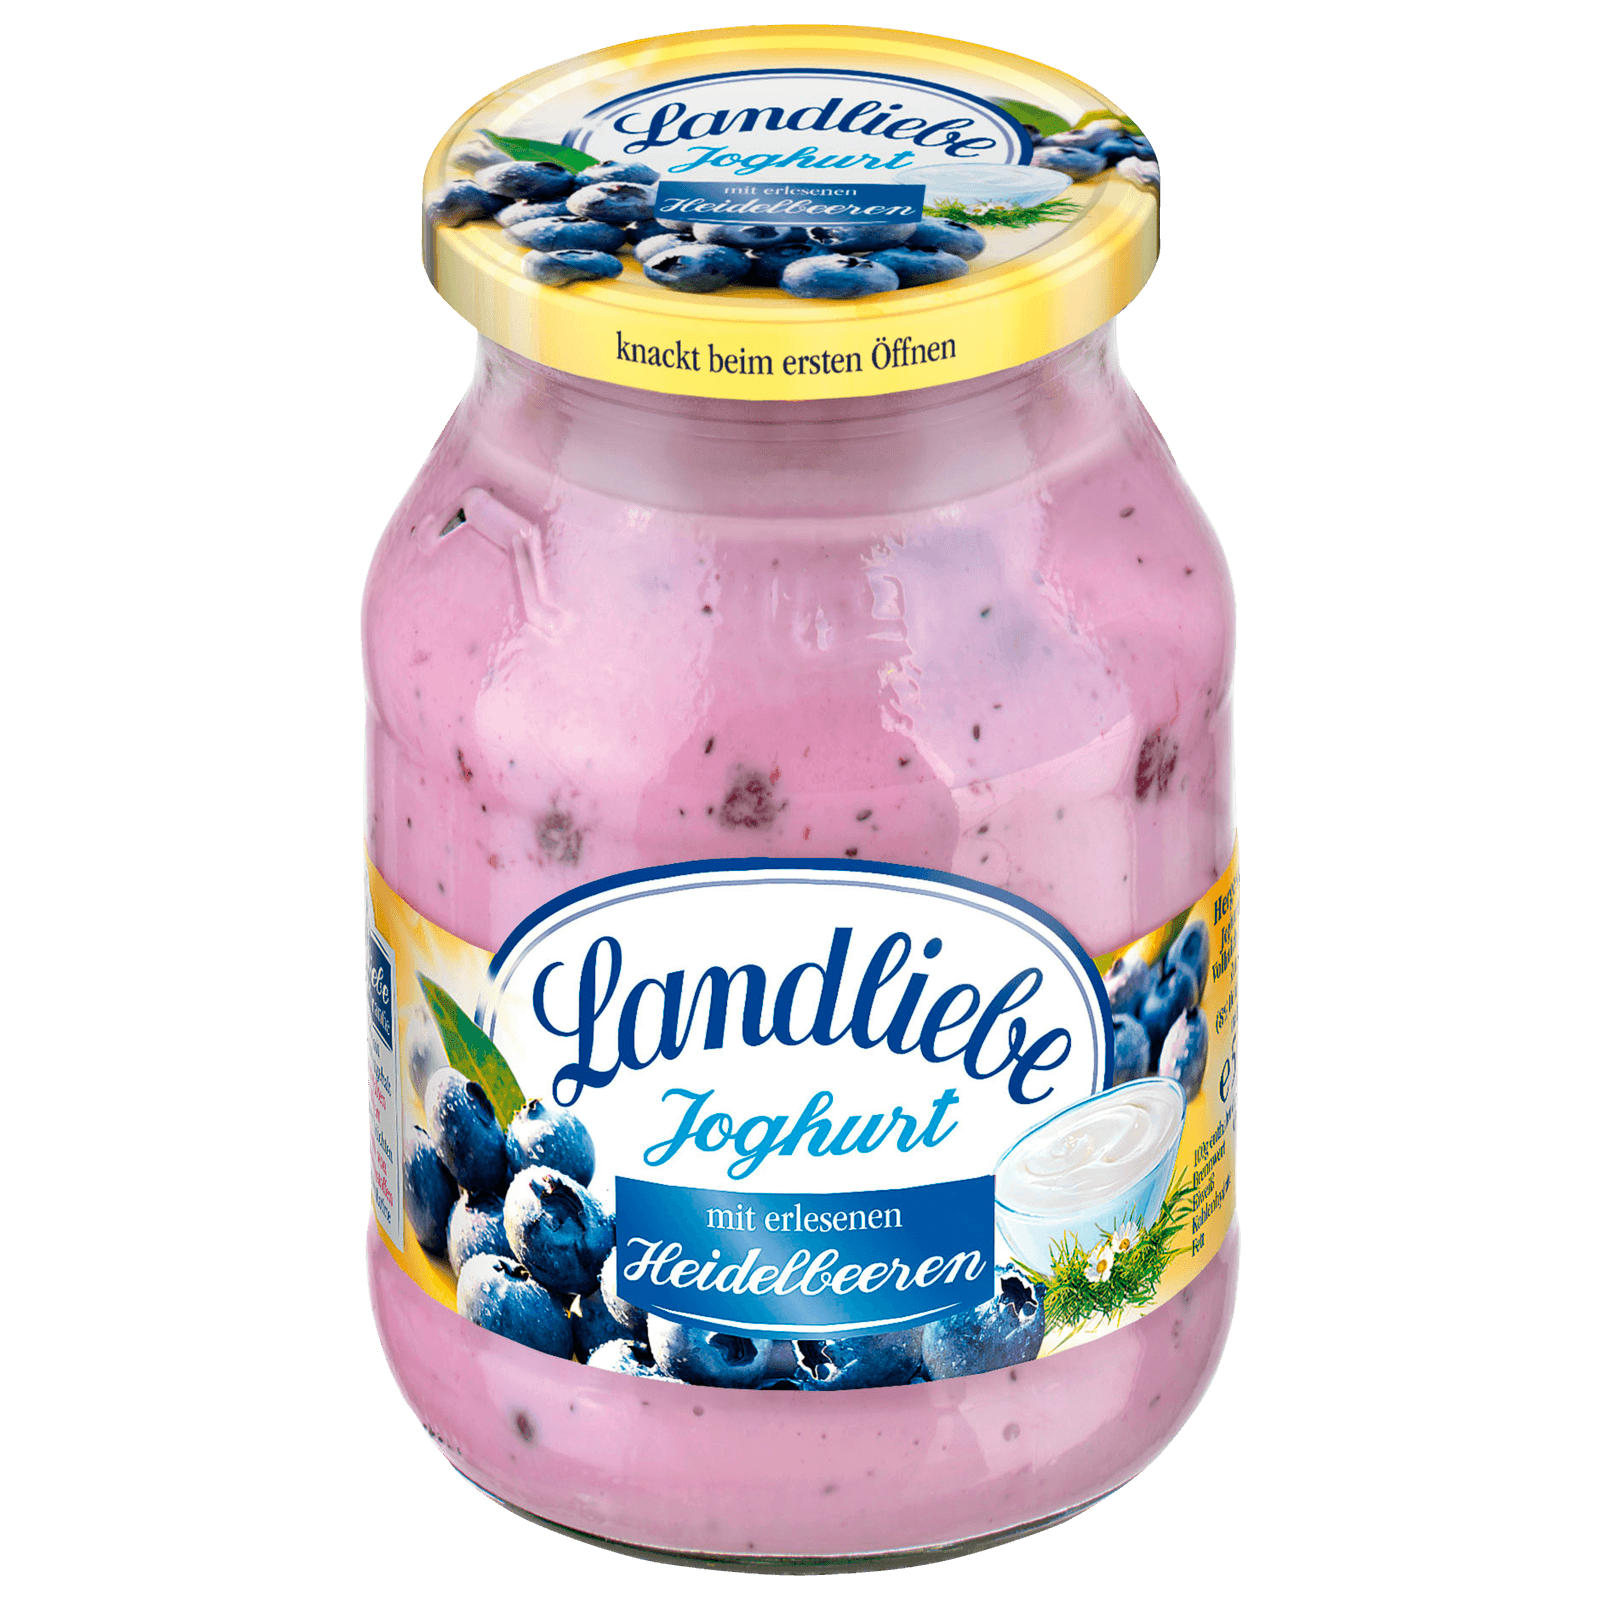 Landliebe Joghurt mit Heidelbeeren 500g